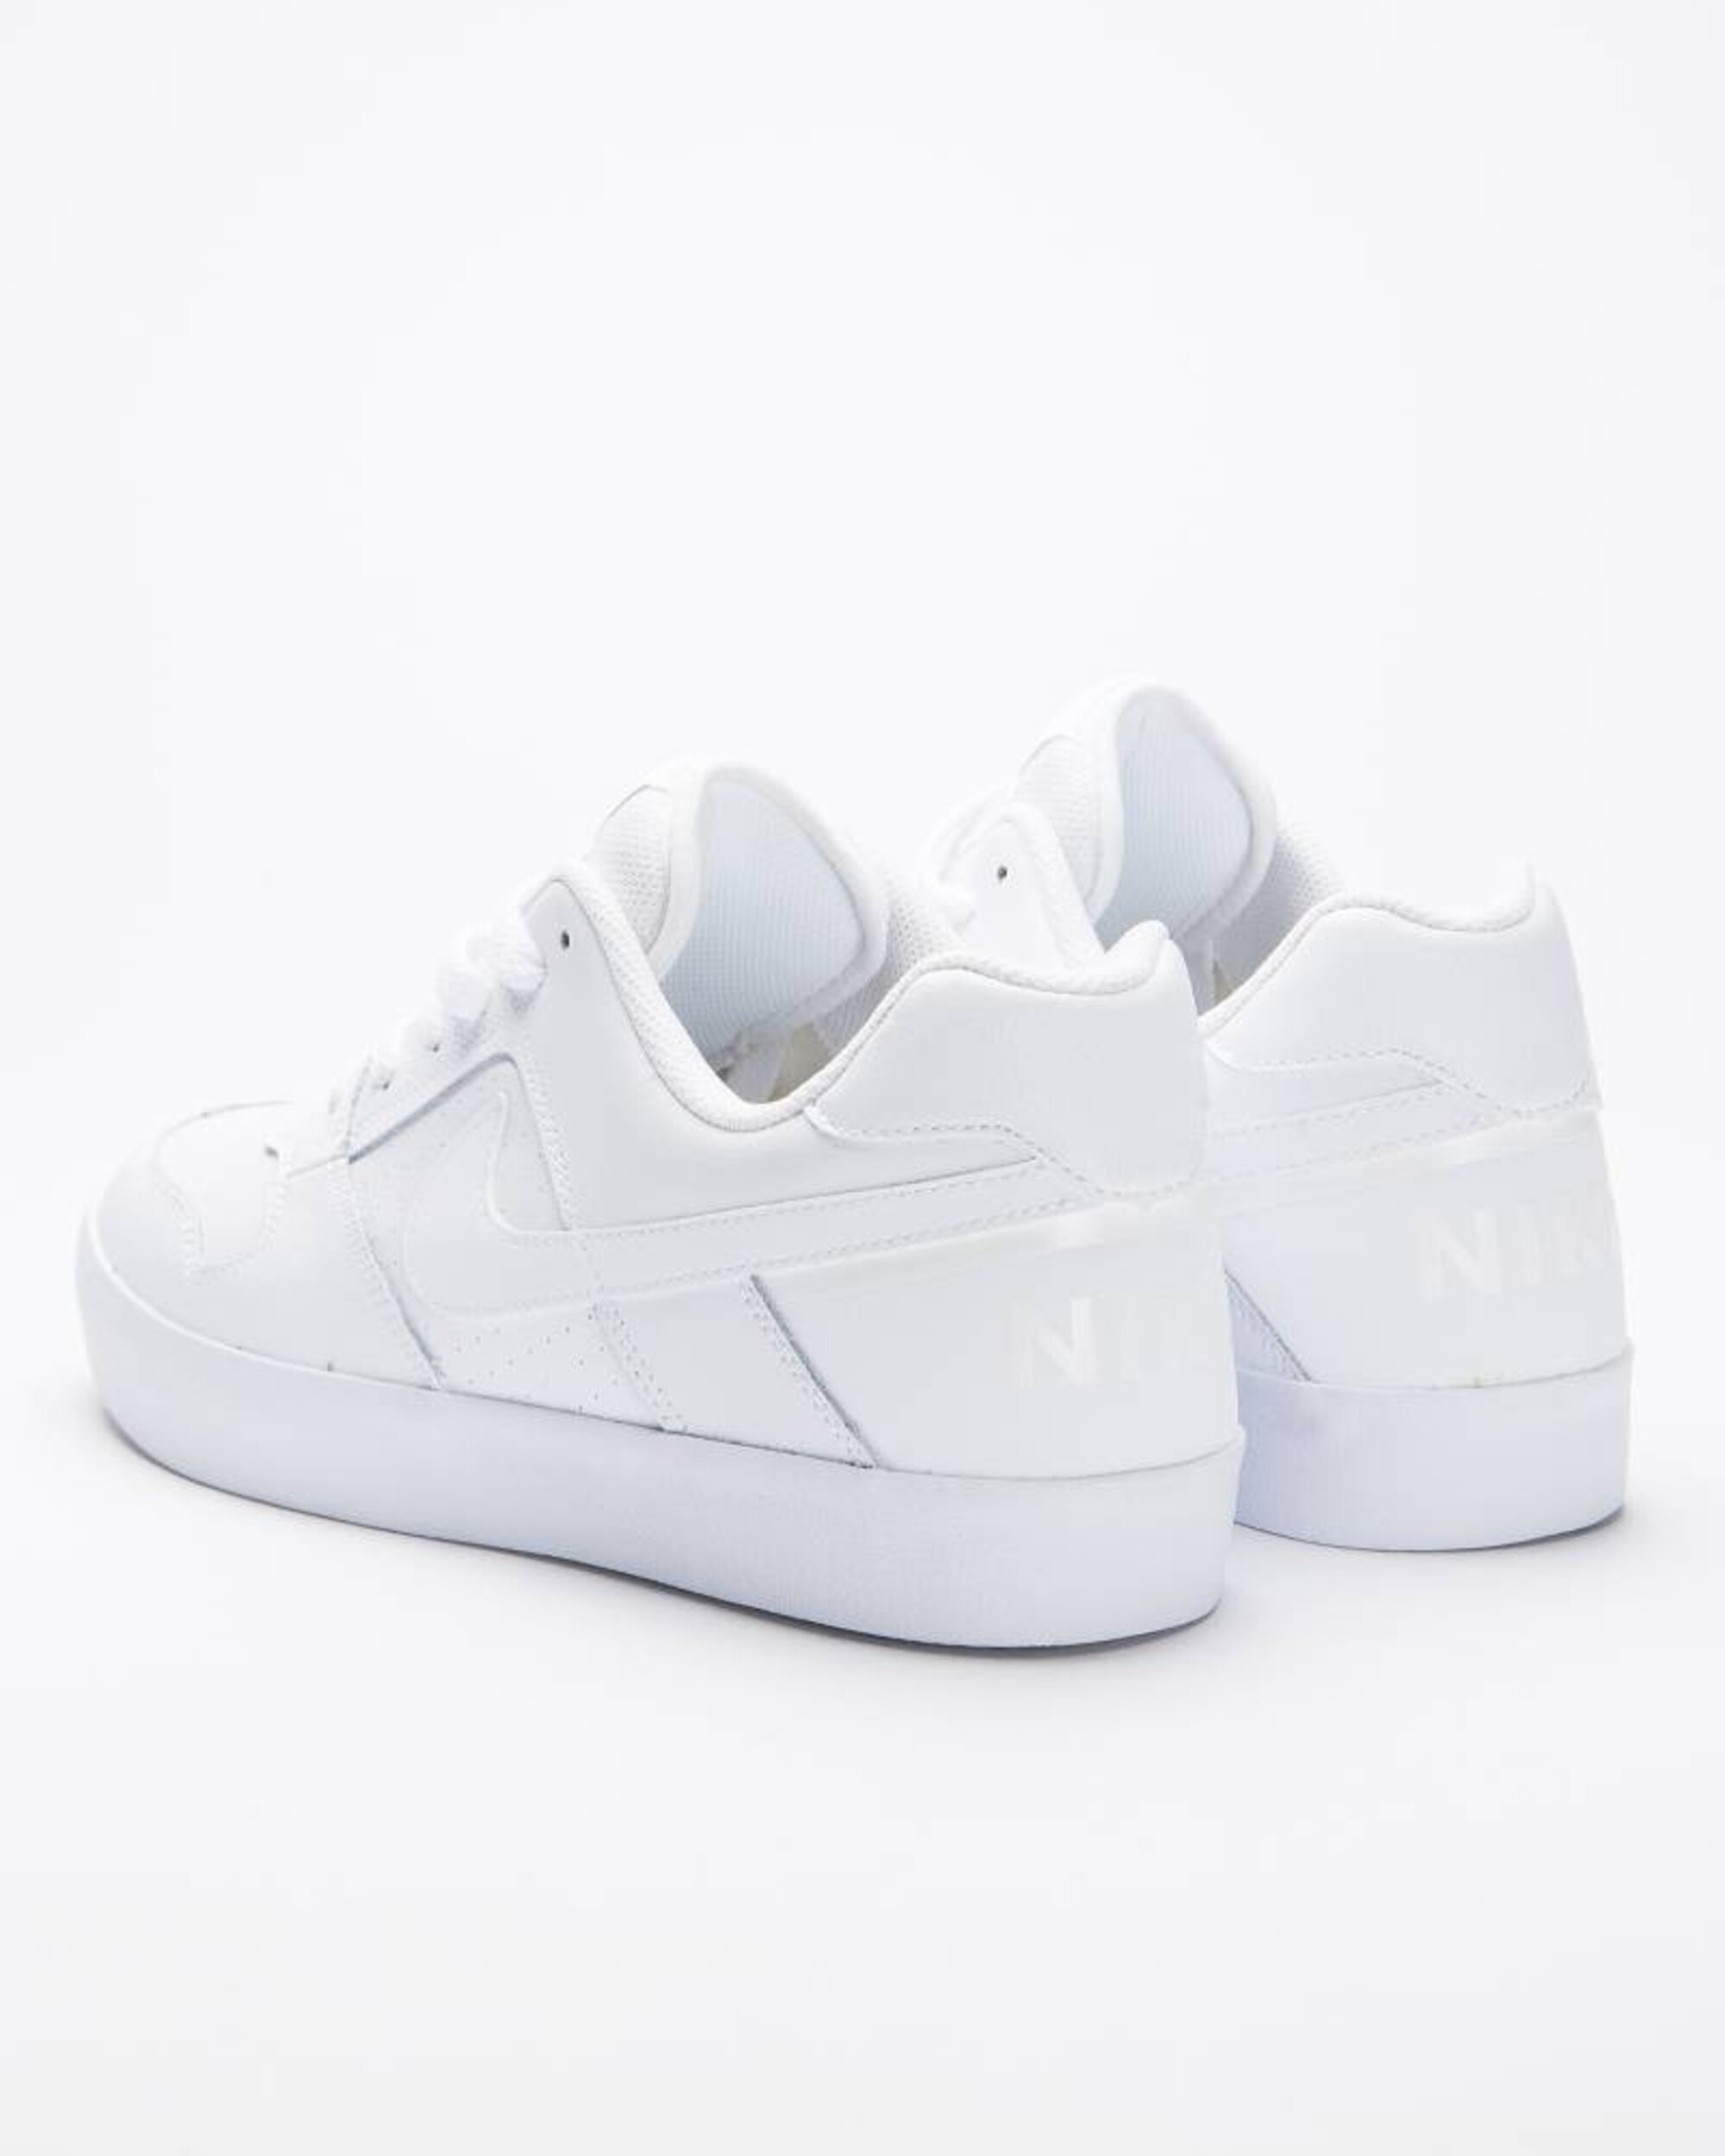 Nike SB Delta Force Vulc white/white-white